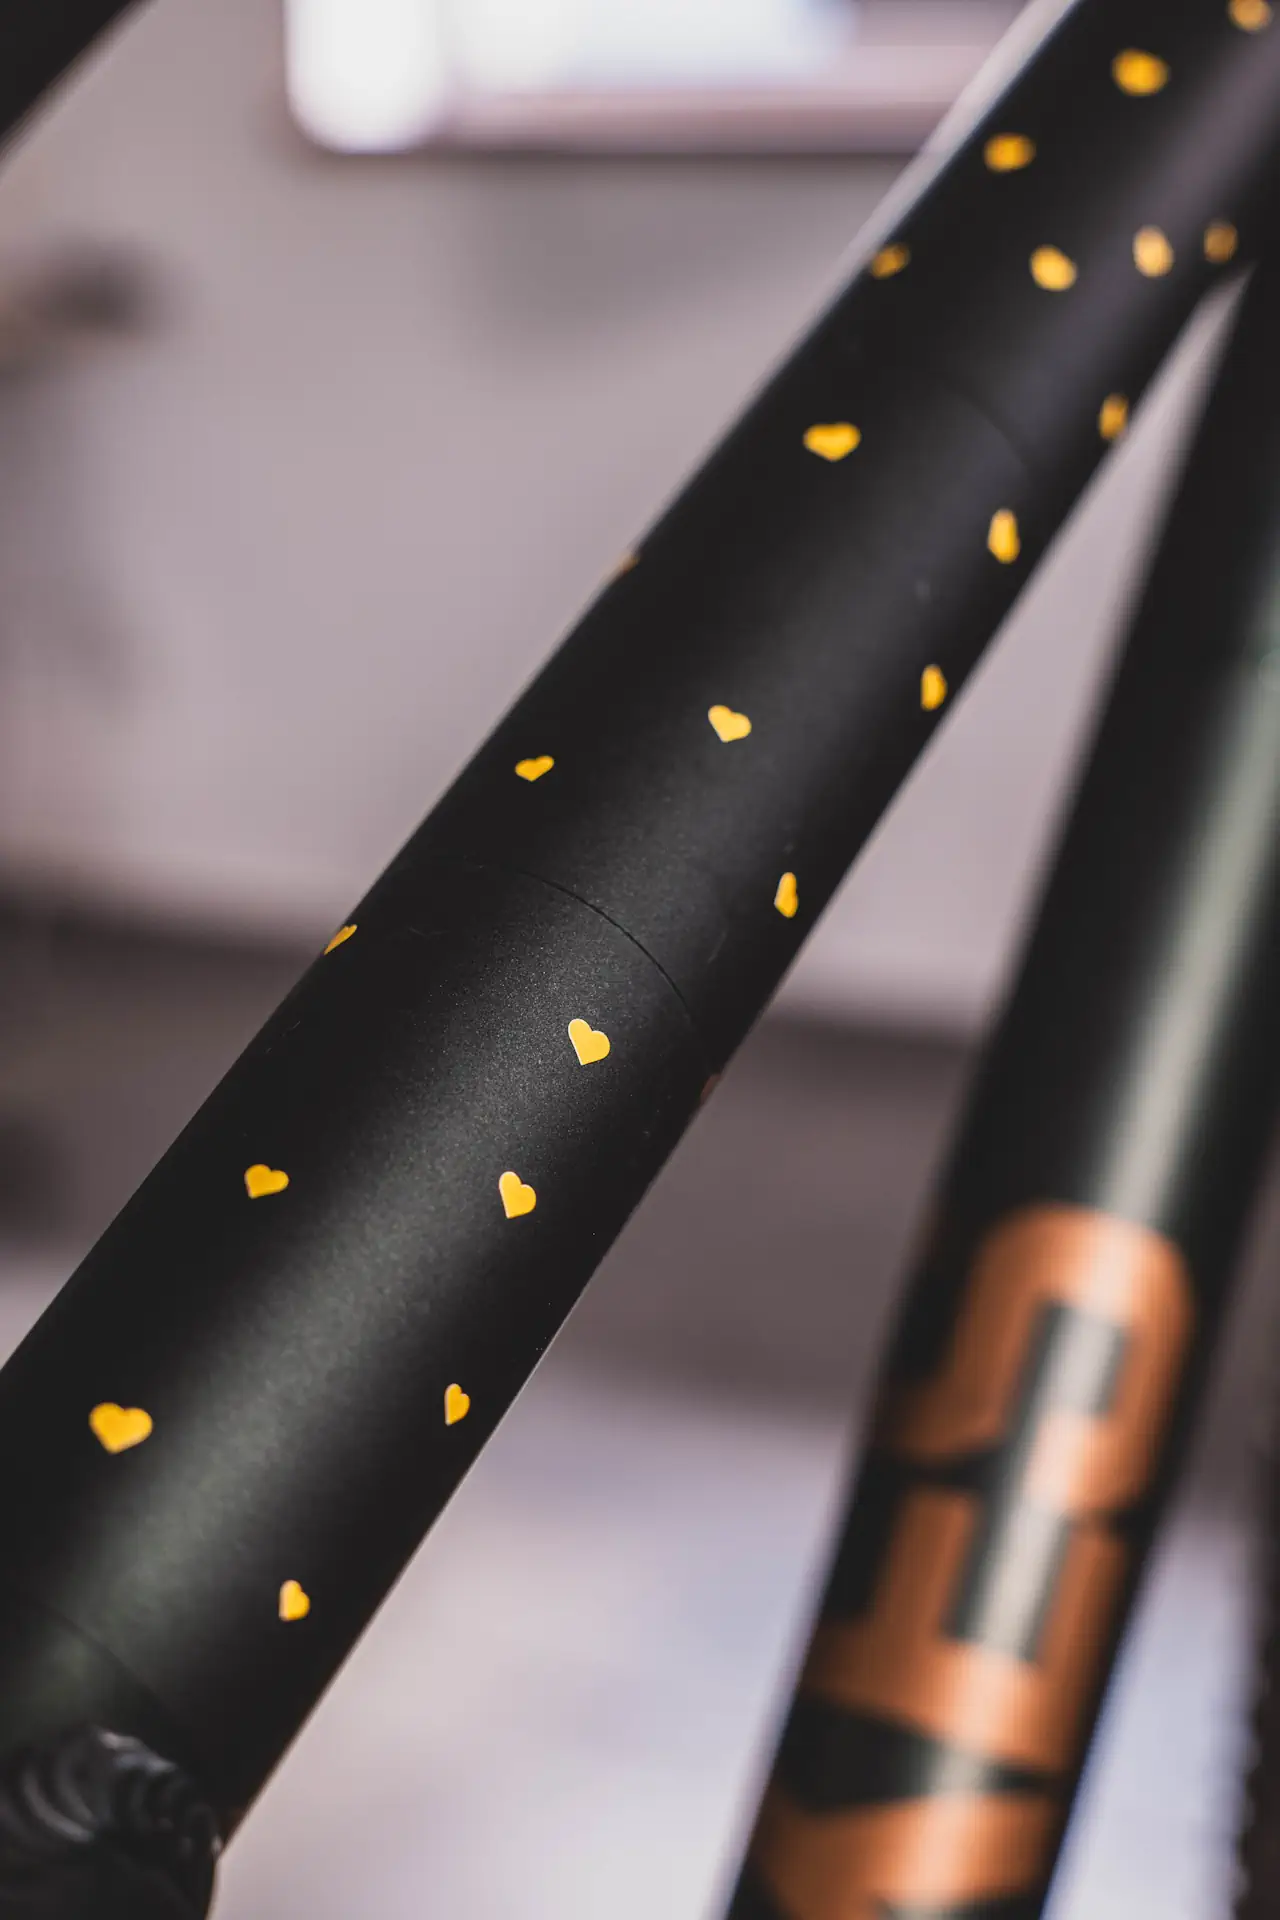 Szczegółowa fotografia rury roweru oklejonej folią ochronną z żółtymi serduszkami na matowym tle